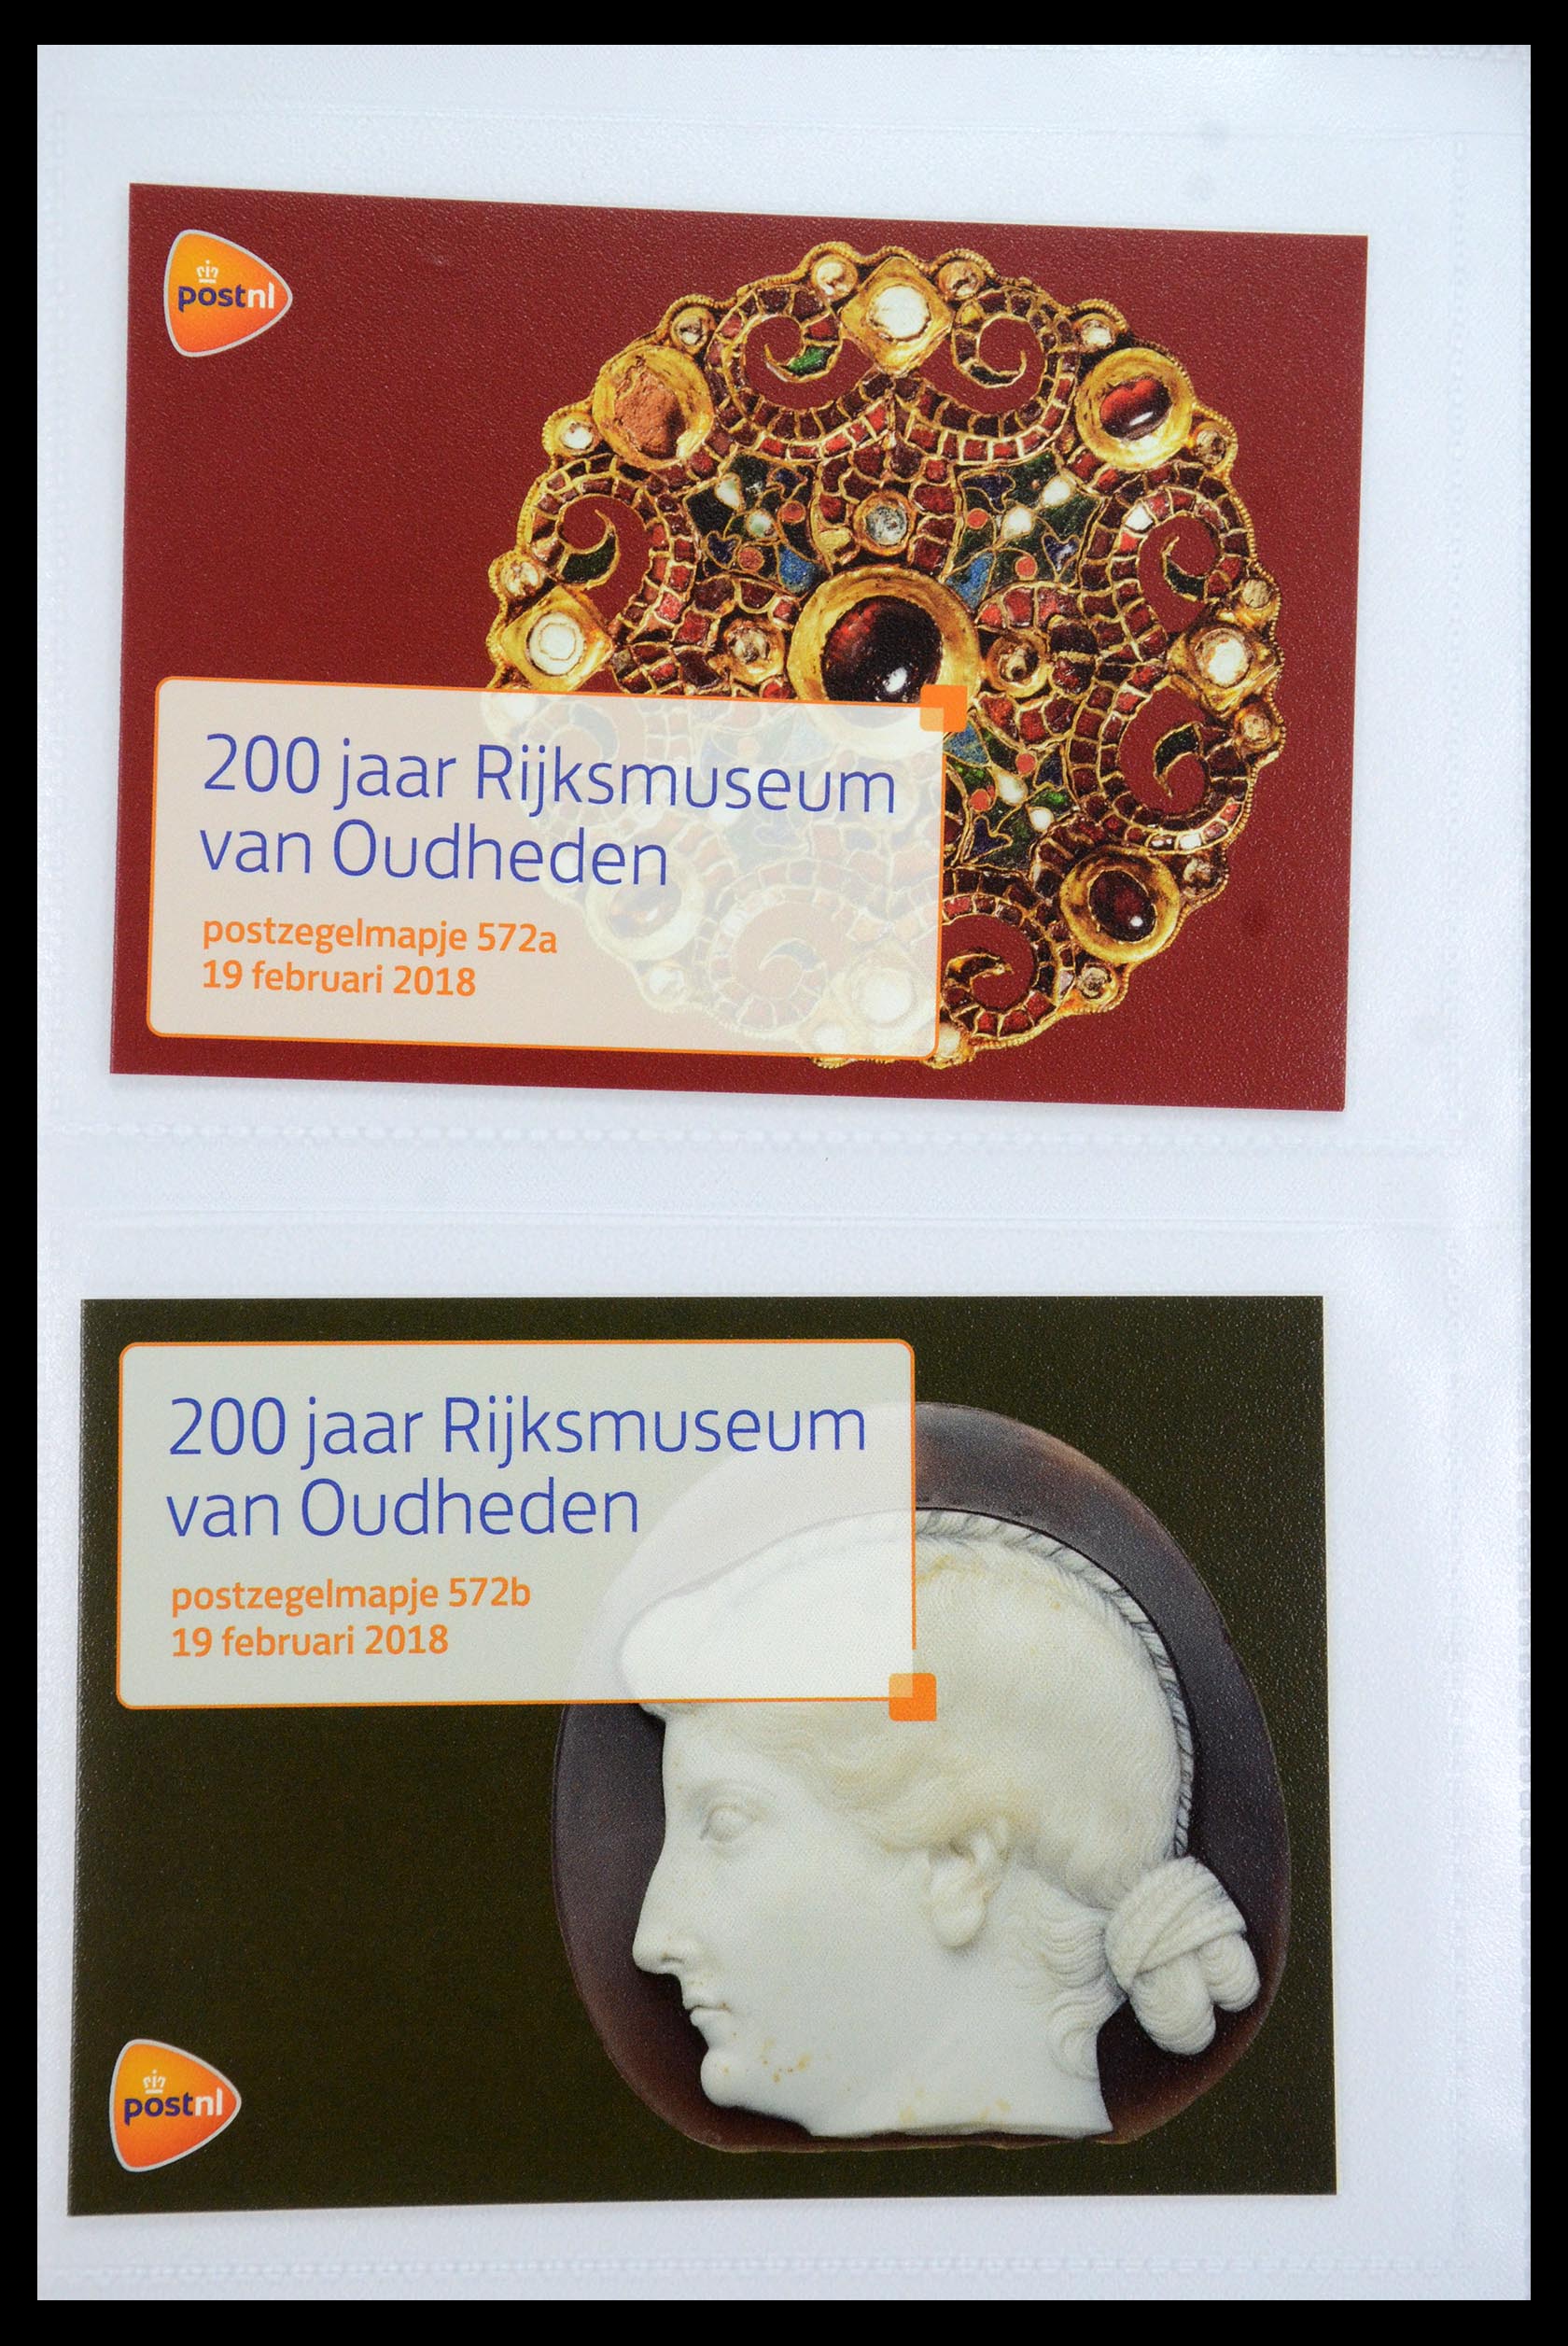 35947 344 - Stamp Collection 35947 Netherlands PTT presentation packs 1982-2019!